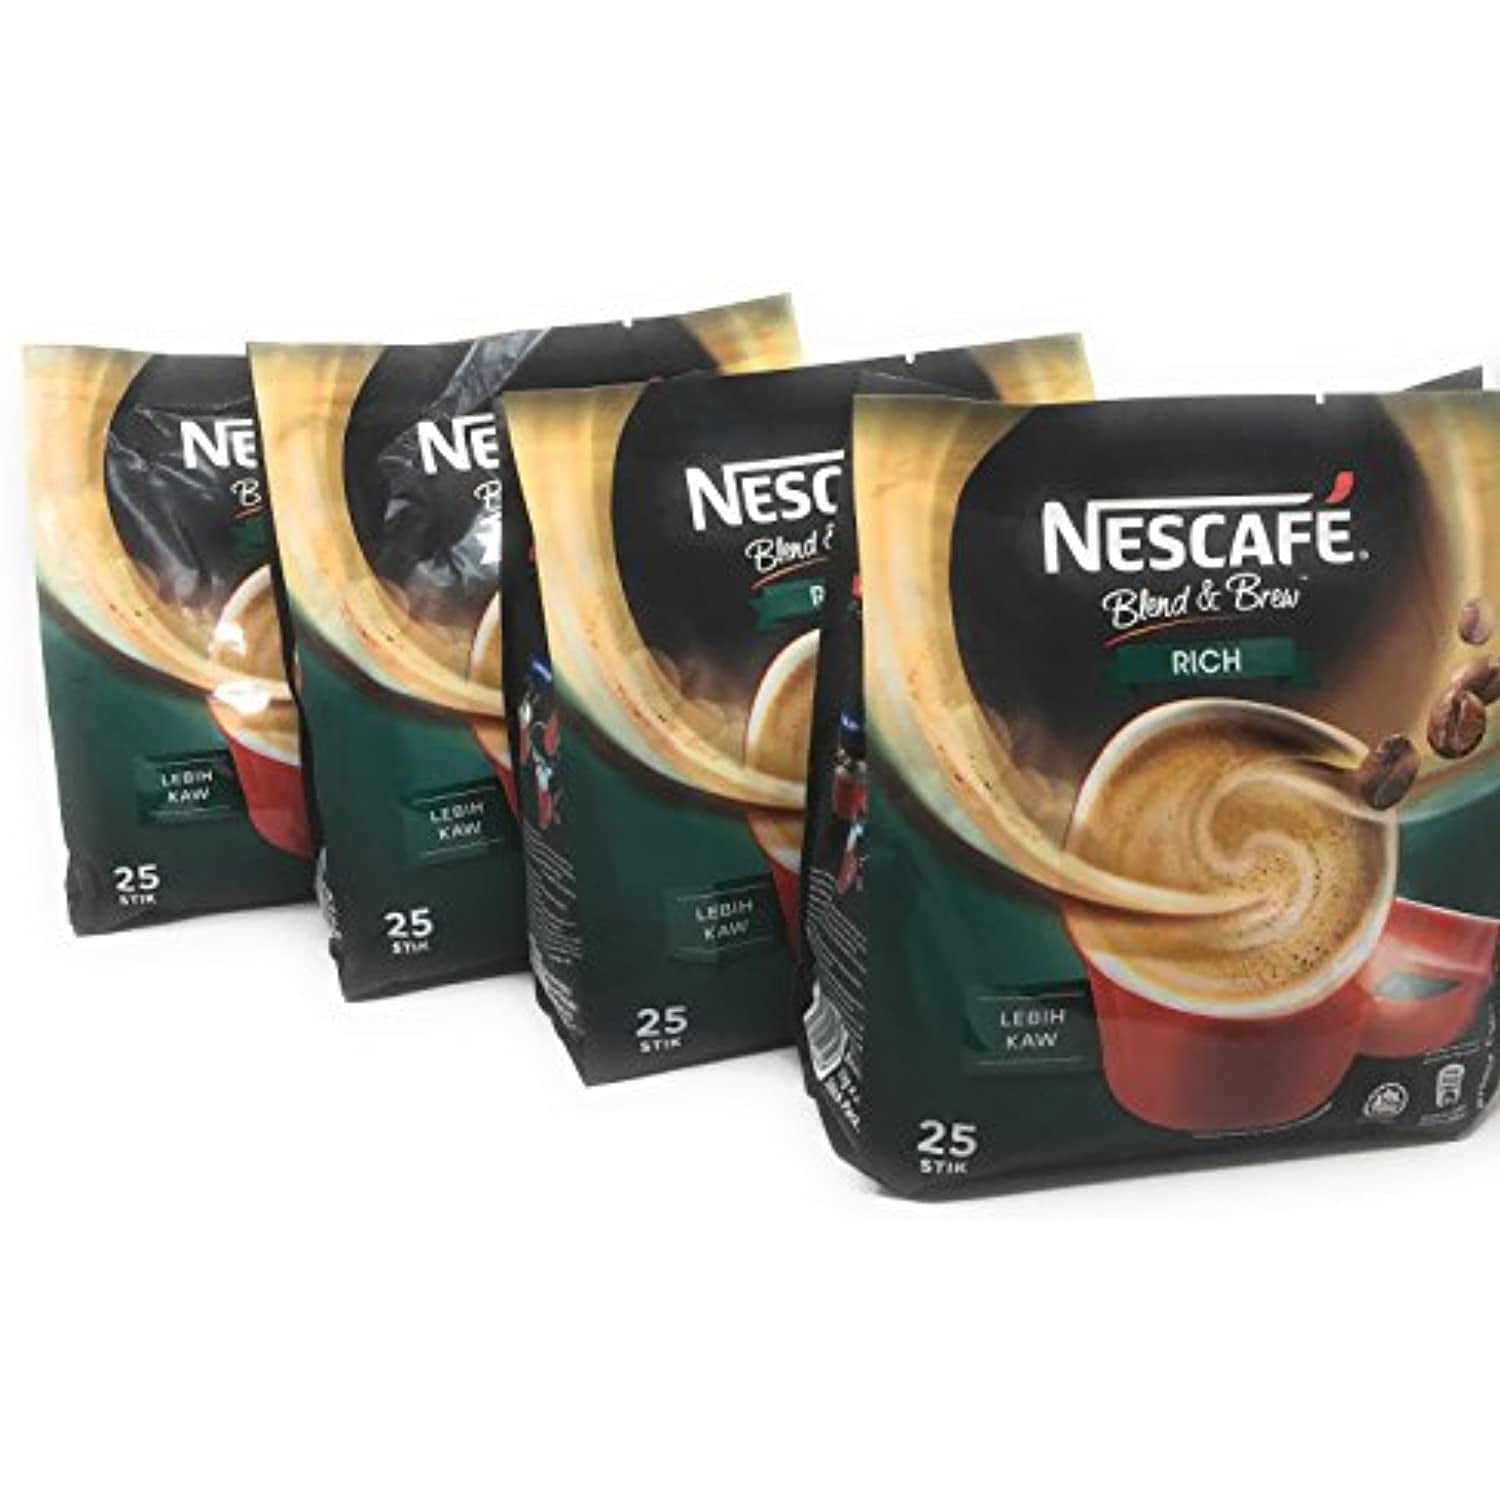 Nescafe 3in1 Milky Foam Package 10 pcs. – Turcamart ®